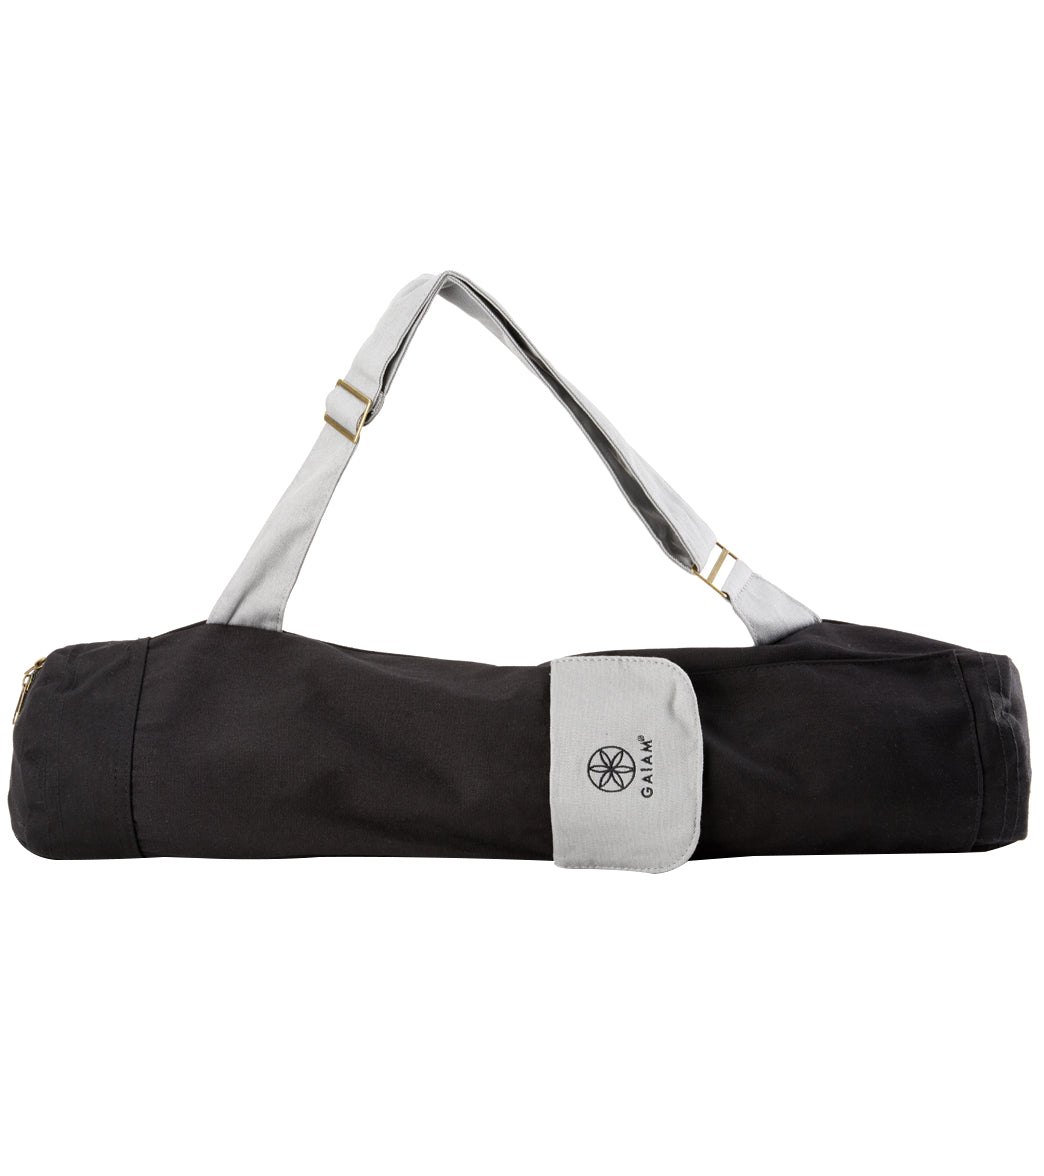 Gaiam Yoga Mat Bags in Yoga 